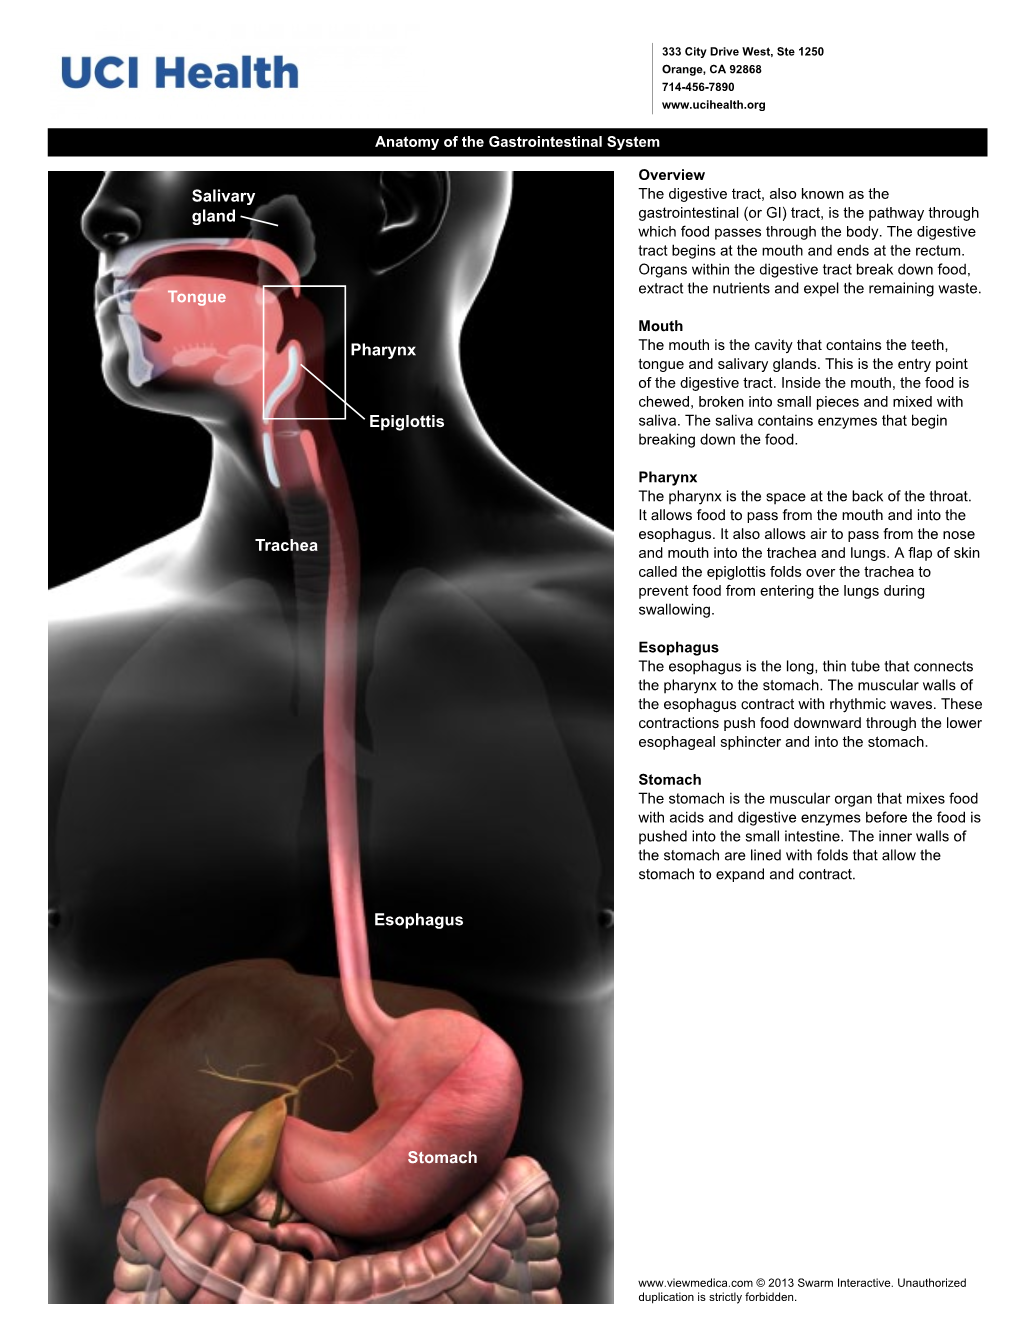 Esophagus Stomach Epiglottis Tongue Pharynx Salivary Gland